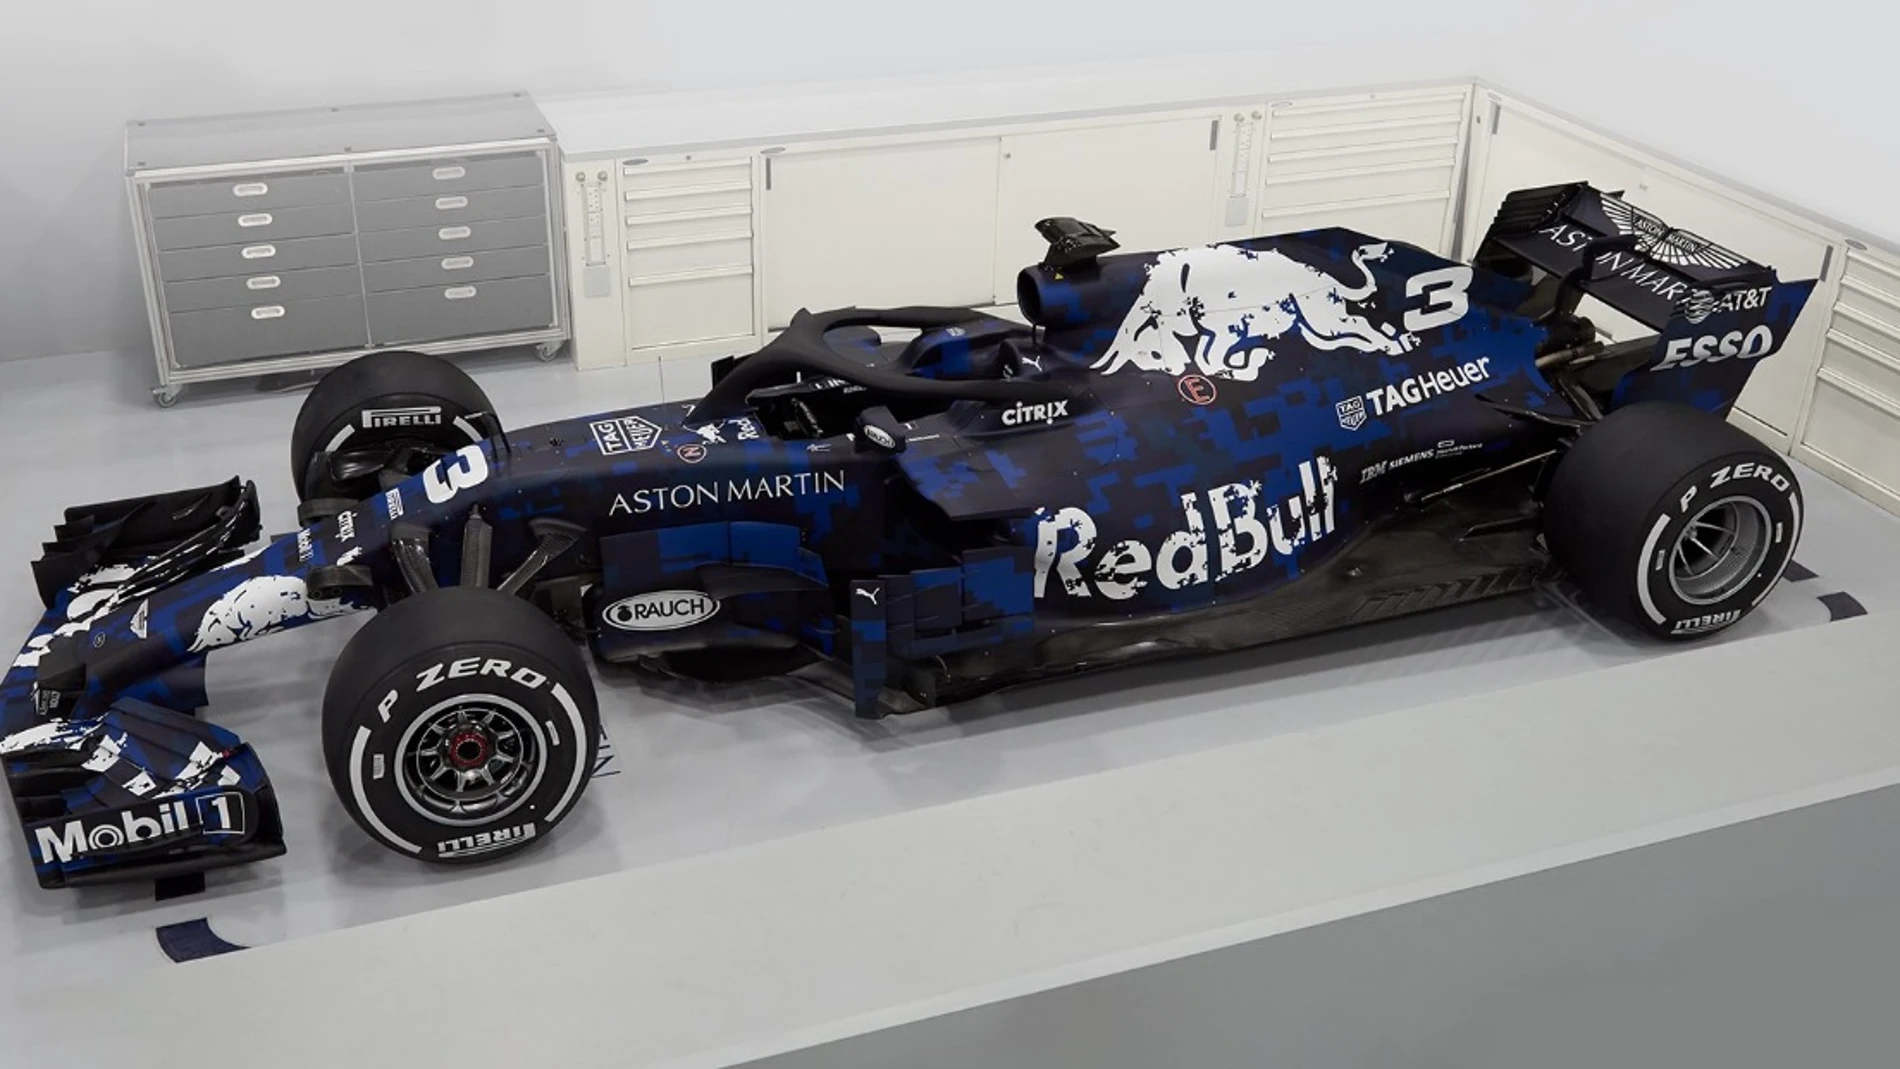 El RB14, el nuevo monoplaza de Red Bull para 2018